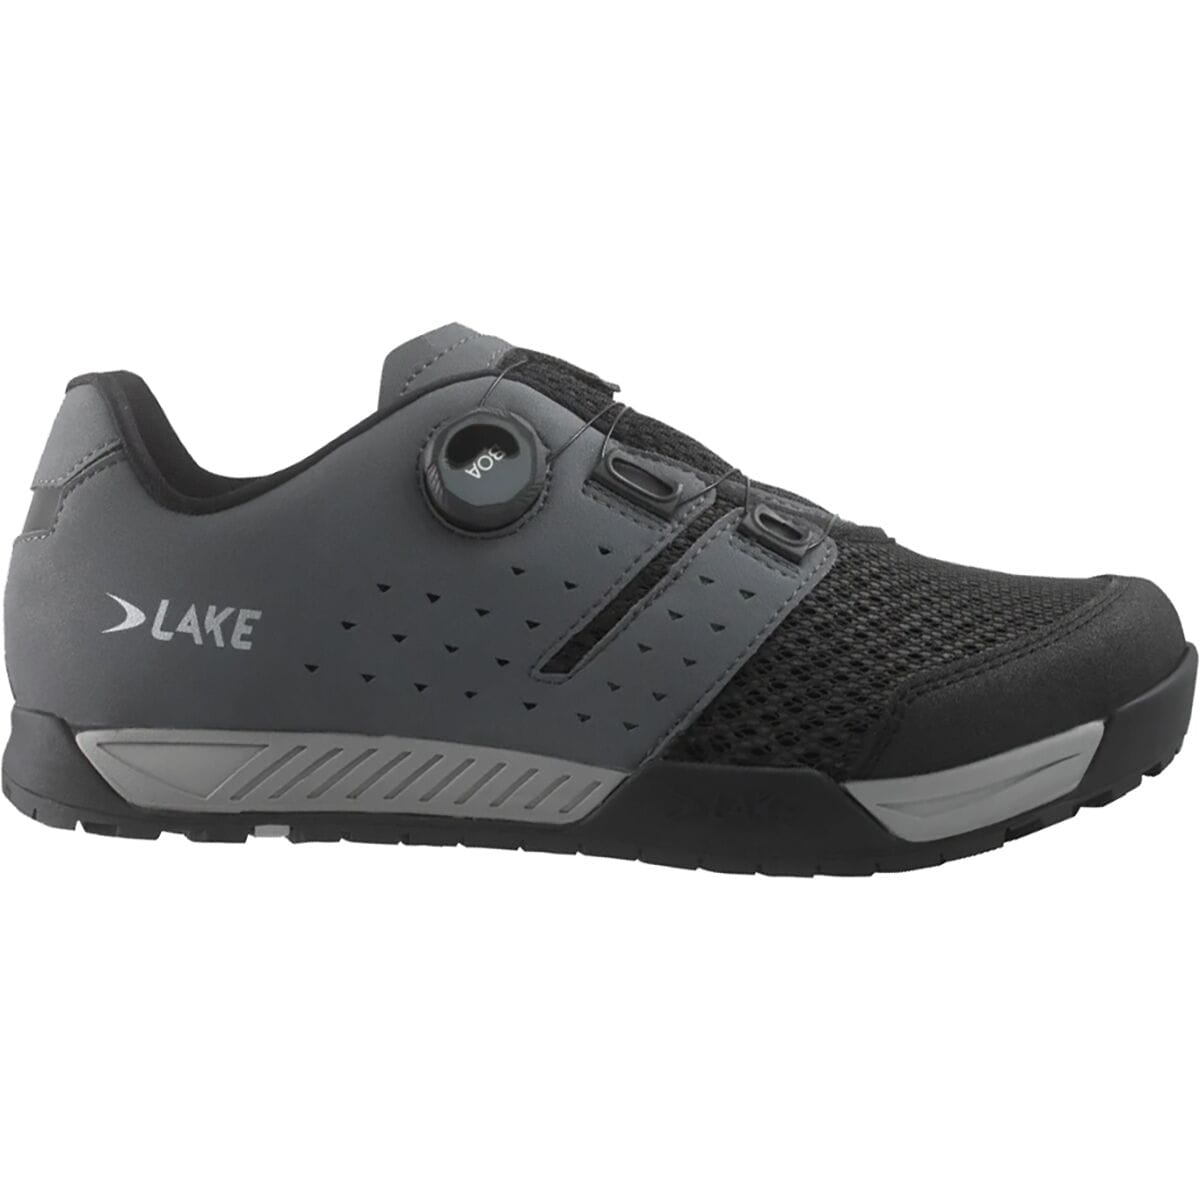 Lake MX201 Enduro Cycling Shoe - Men's Grey/Black, 43.0